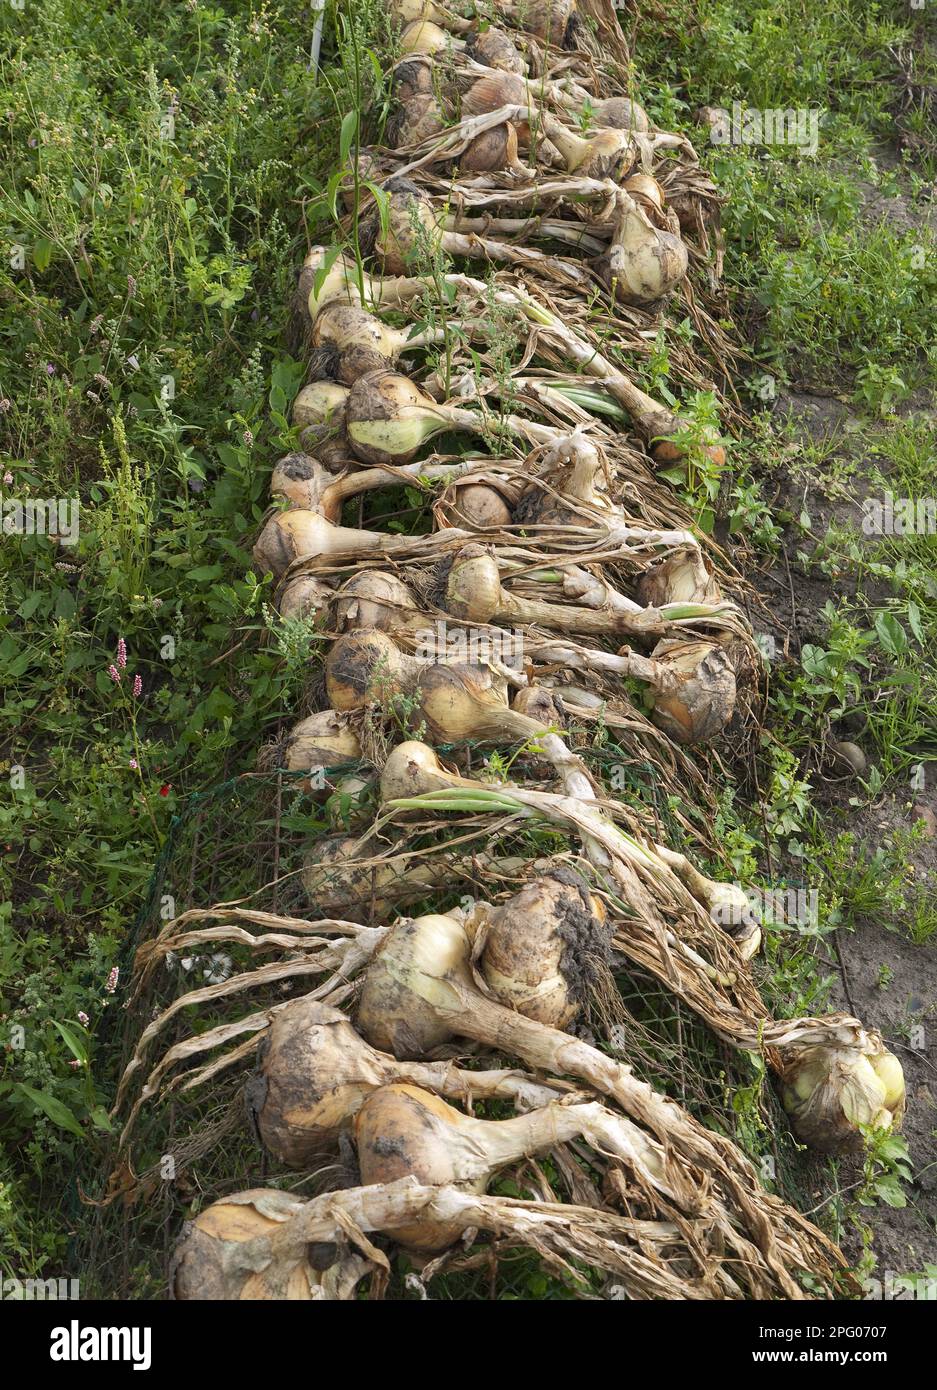 Bulbes d'oignon (Allium cesp), fraîchement récoltés et séchant dans l'allotissement urbain, Norfolk, Angleterre, Royaume-Uni Banque D'Images